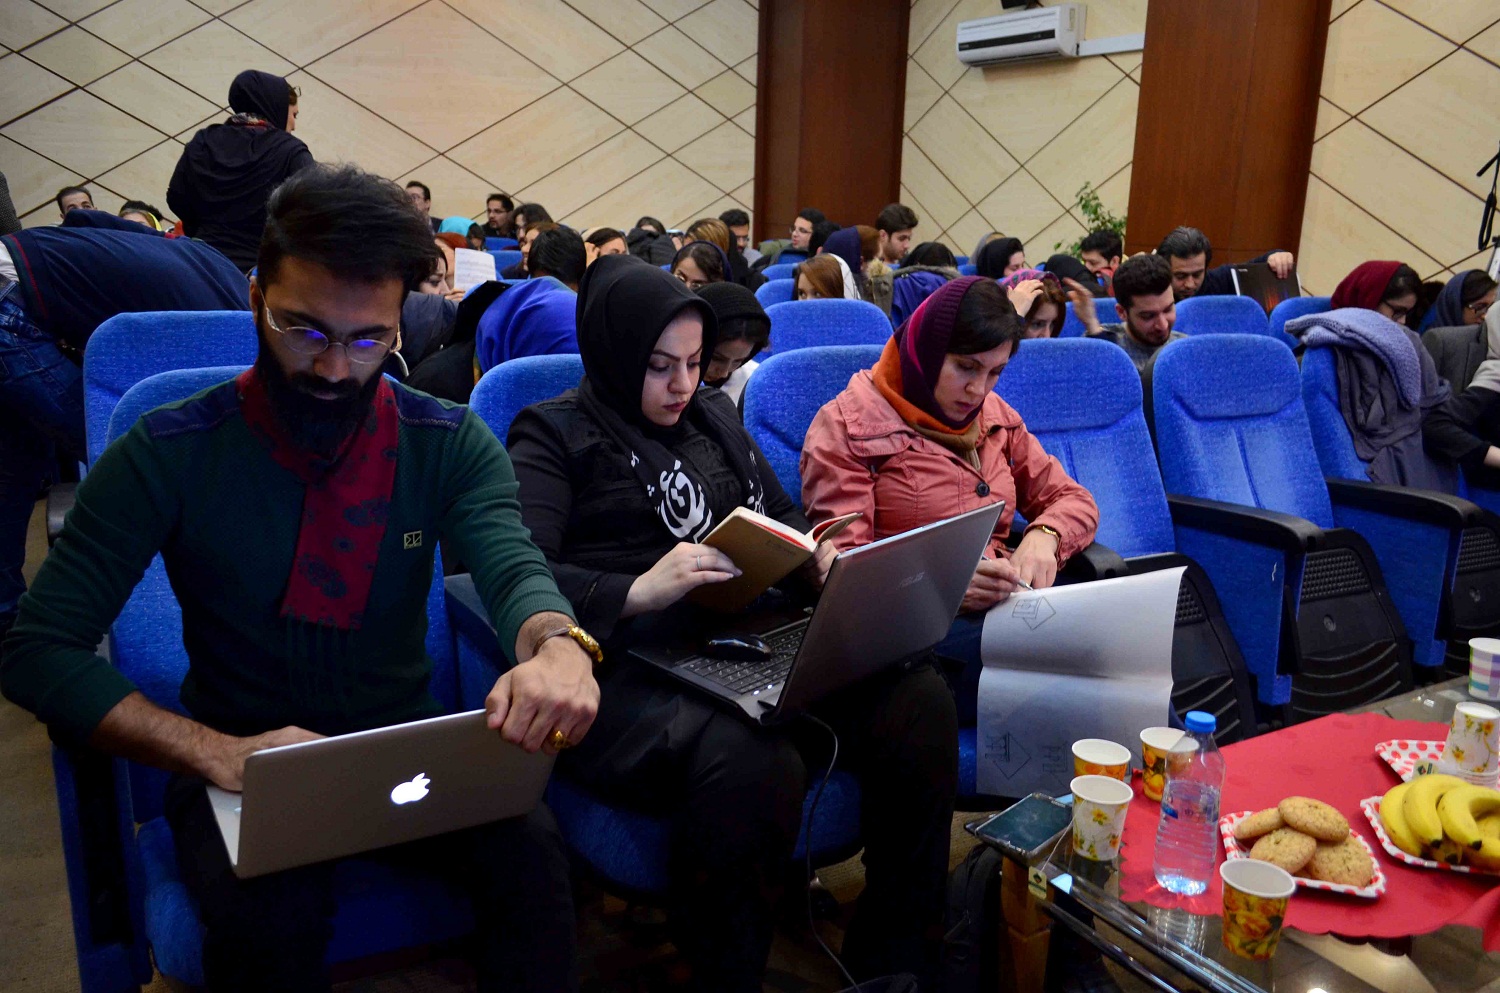 برگزاری گارگاه و همایش اموزشی طراحی طلا و زیورالات در تبریز+تصاویر